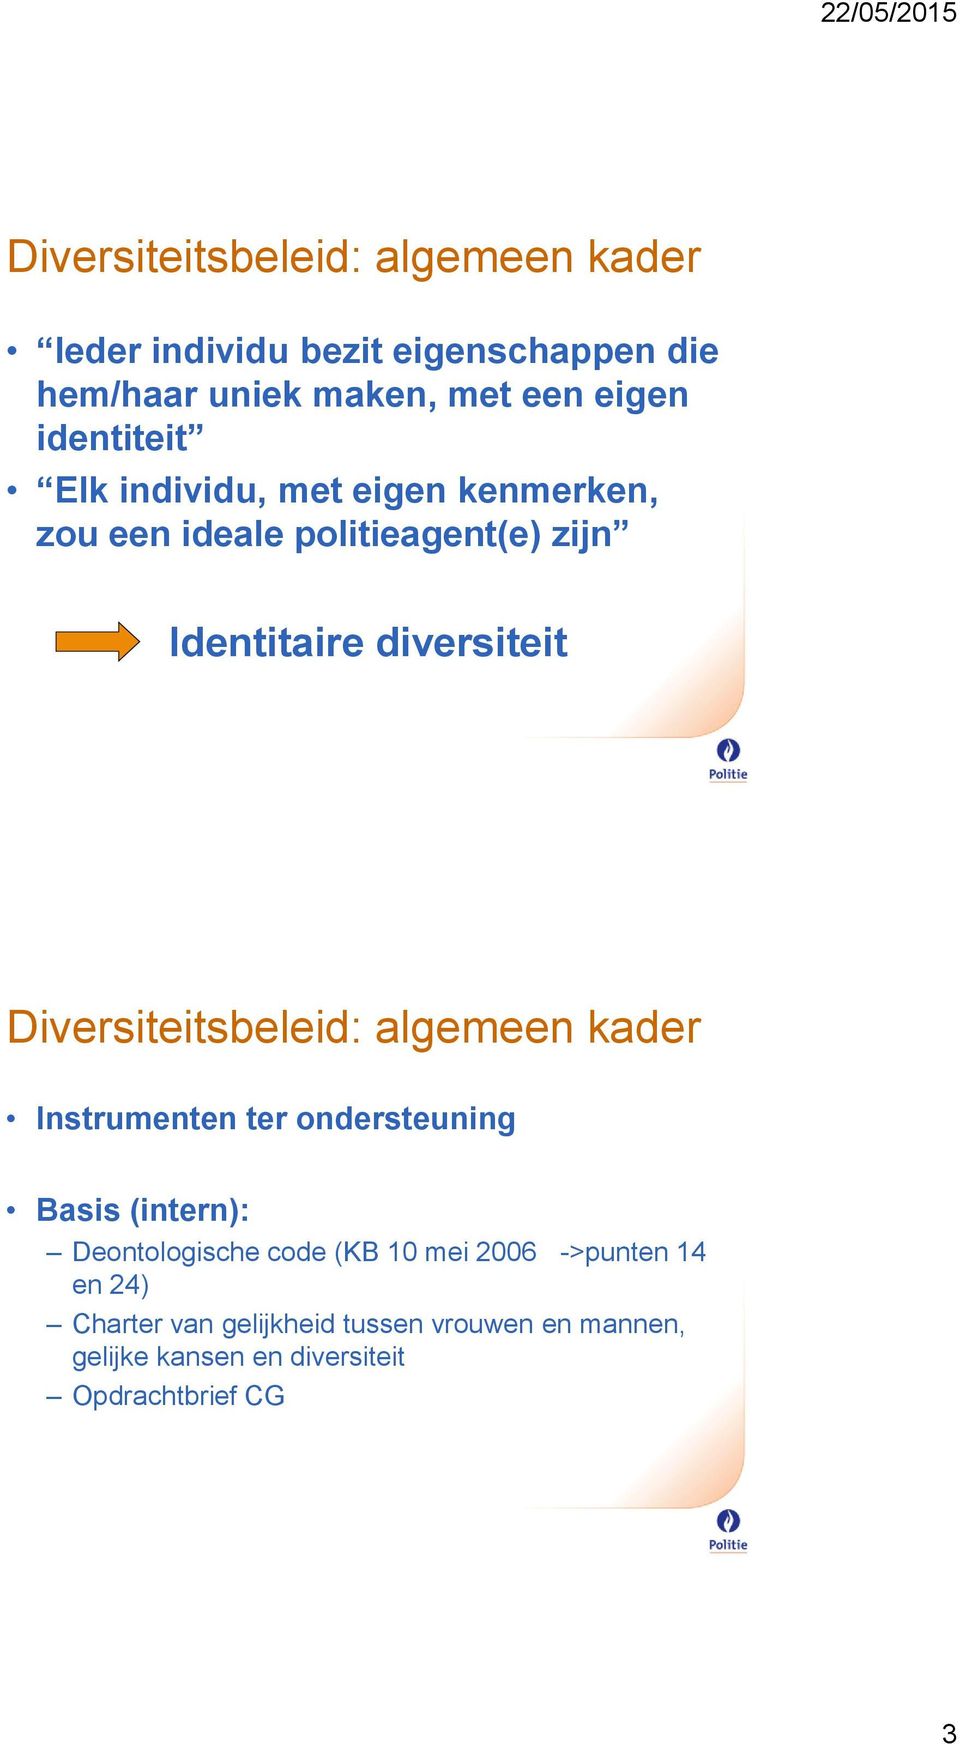 Diversiteitsbeleid: algemeen kader Instrumenten ter ondersteuning Basis (intern): Deontologische code (KB 10 mei